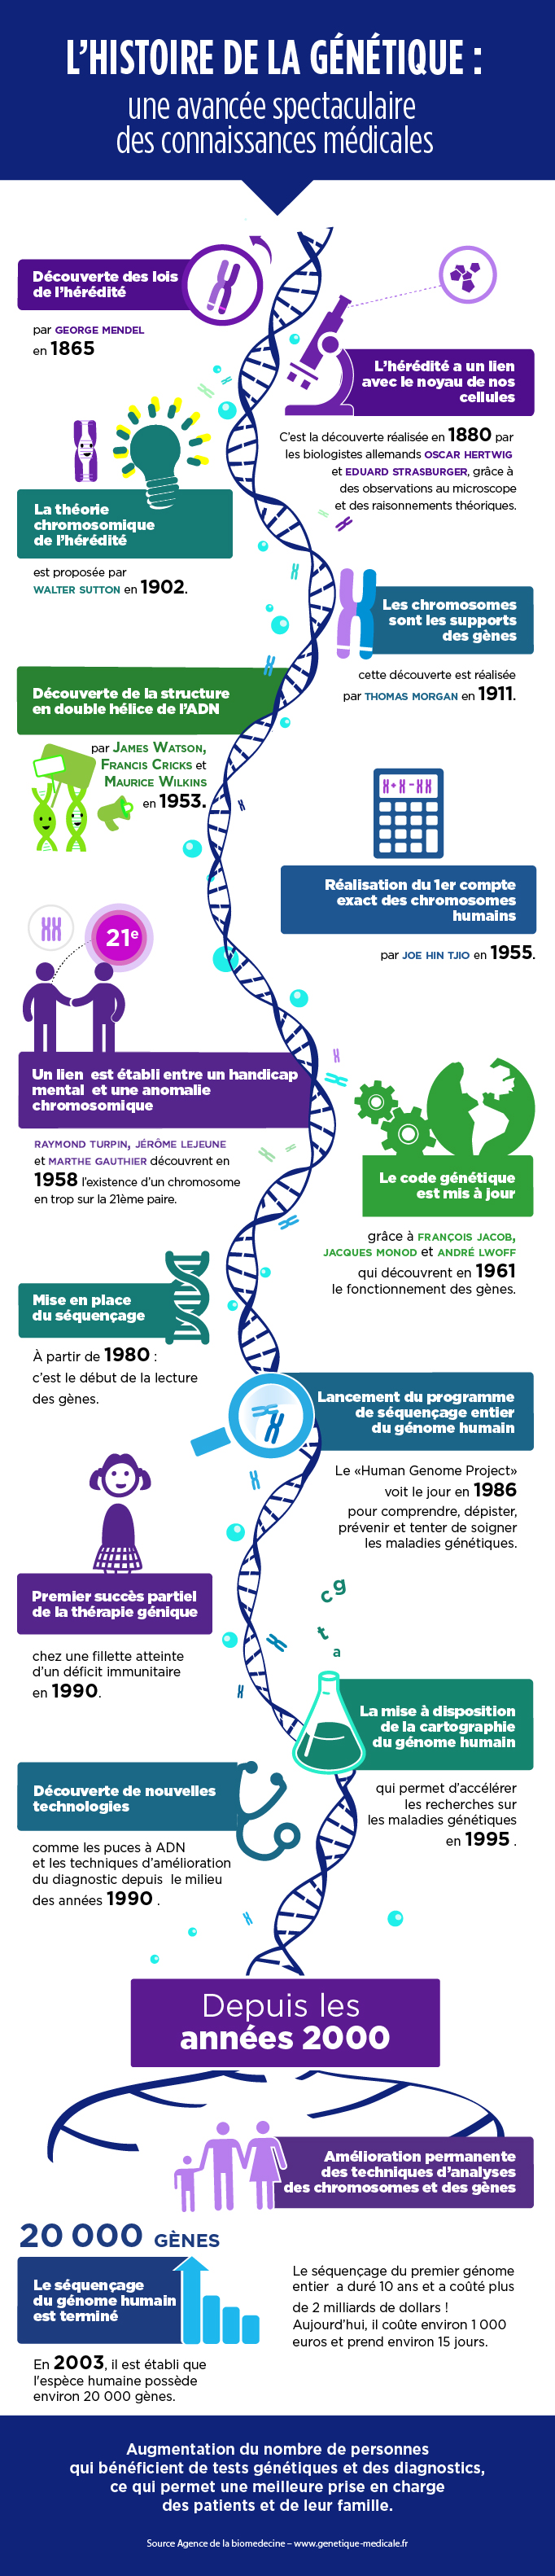 Histoire de la génétique : de l'hérédité au séquençage du génome